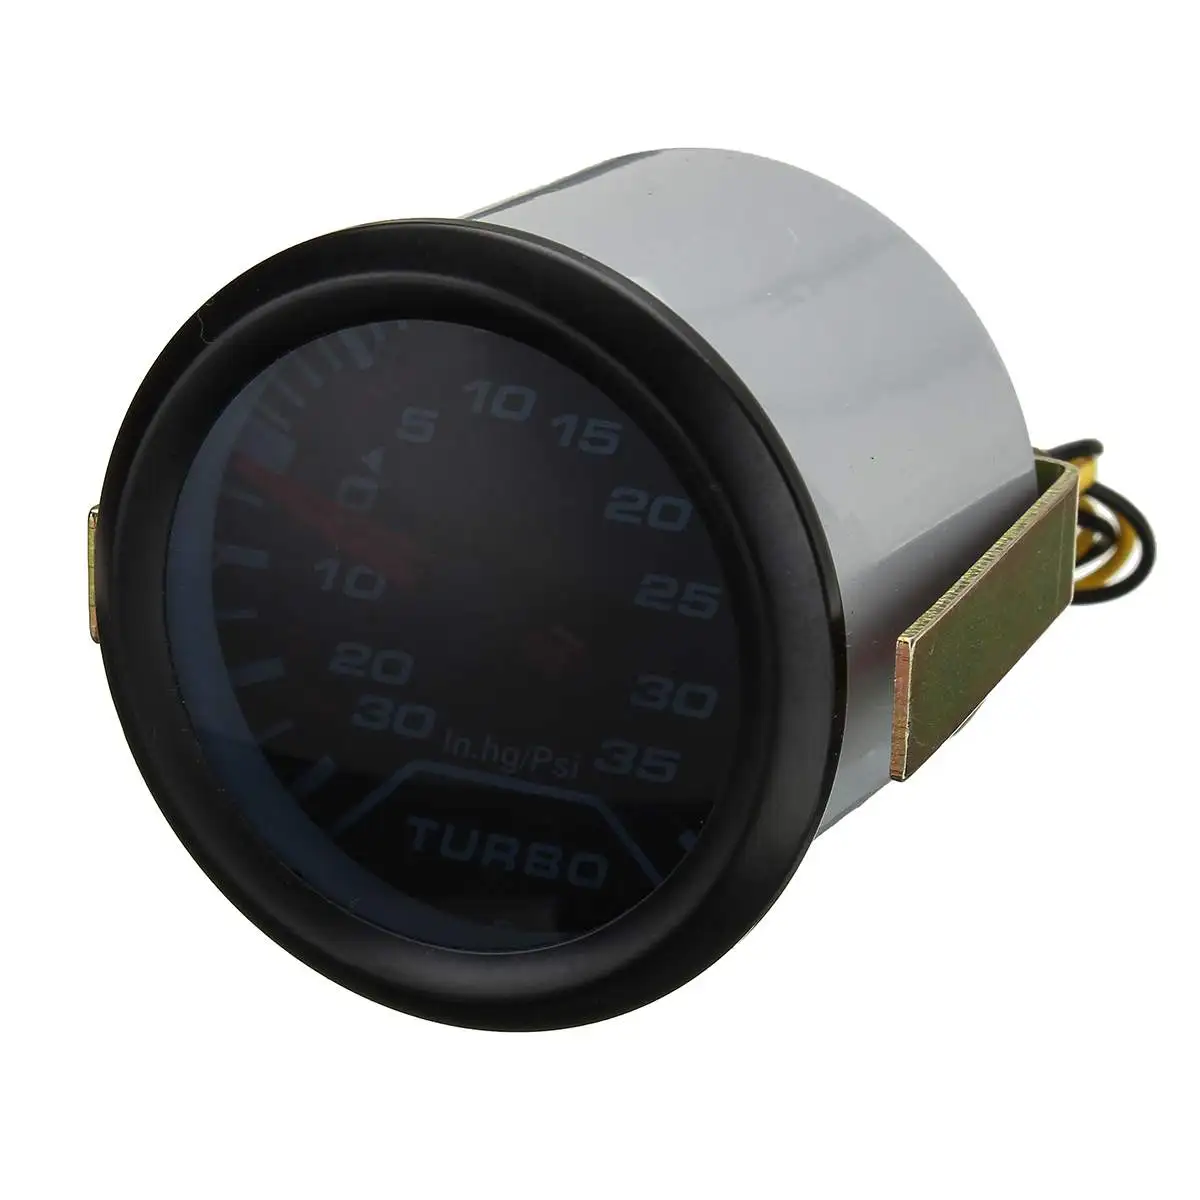 Универсальный " 52 мм Автомобильный турбонаддувной измеритель давления PSI дымовой циферблат лицо белый цифровой светодиодный фонарь дисплей